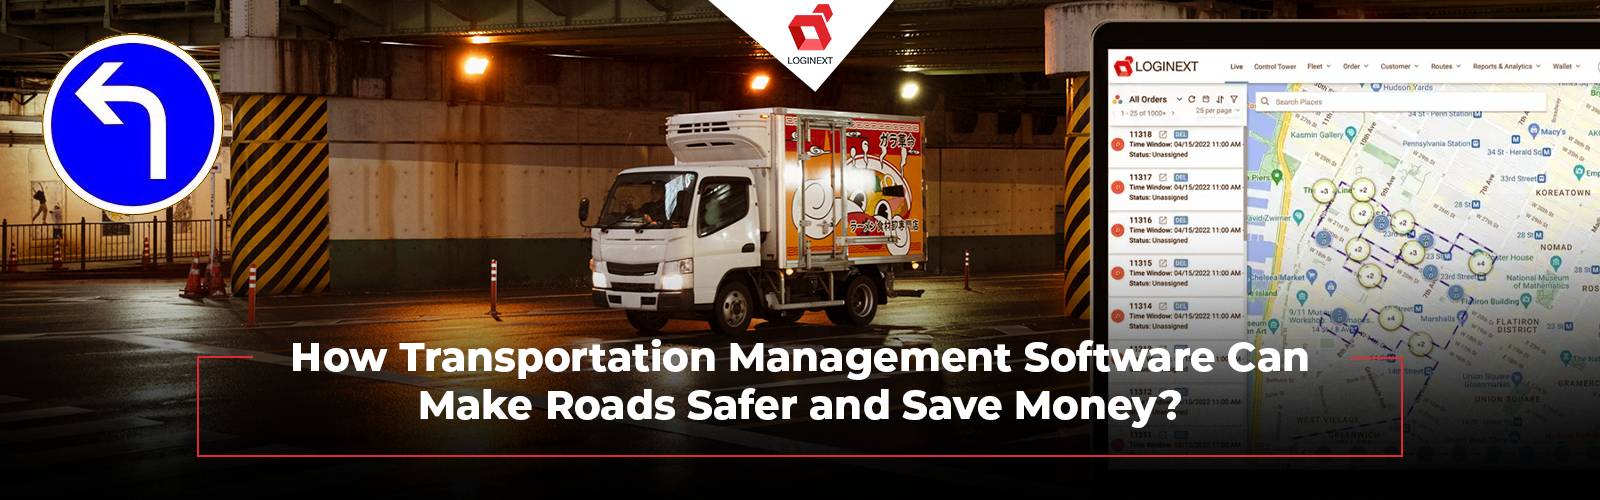 Transportation Management Software saves money and makes roads safer